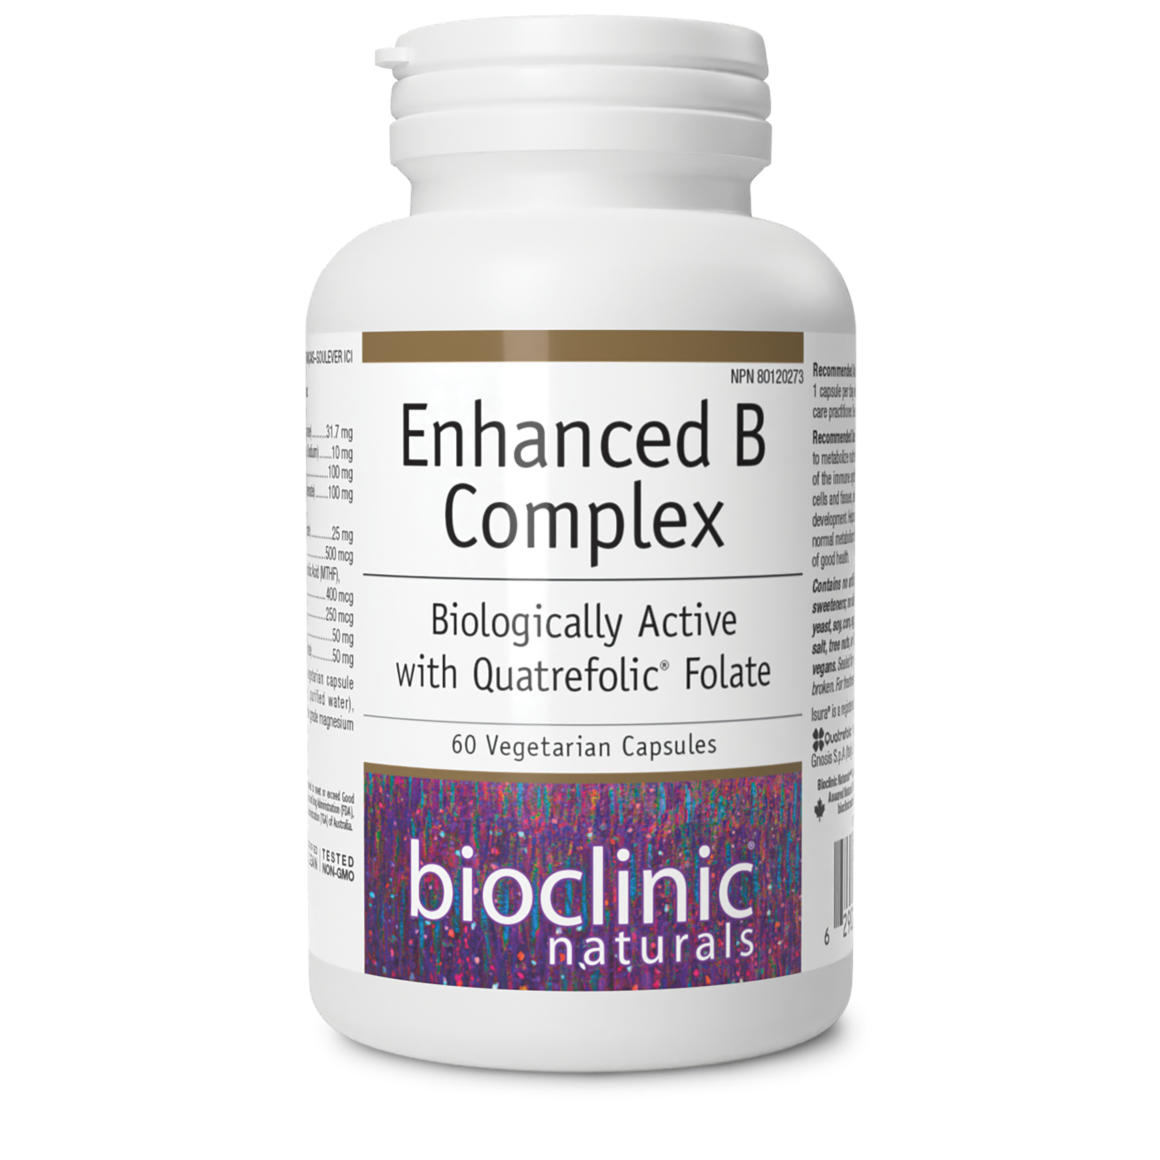 BioClinic Naturals Active B Complex